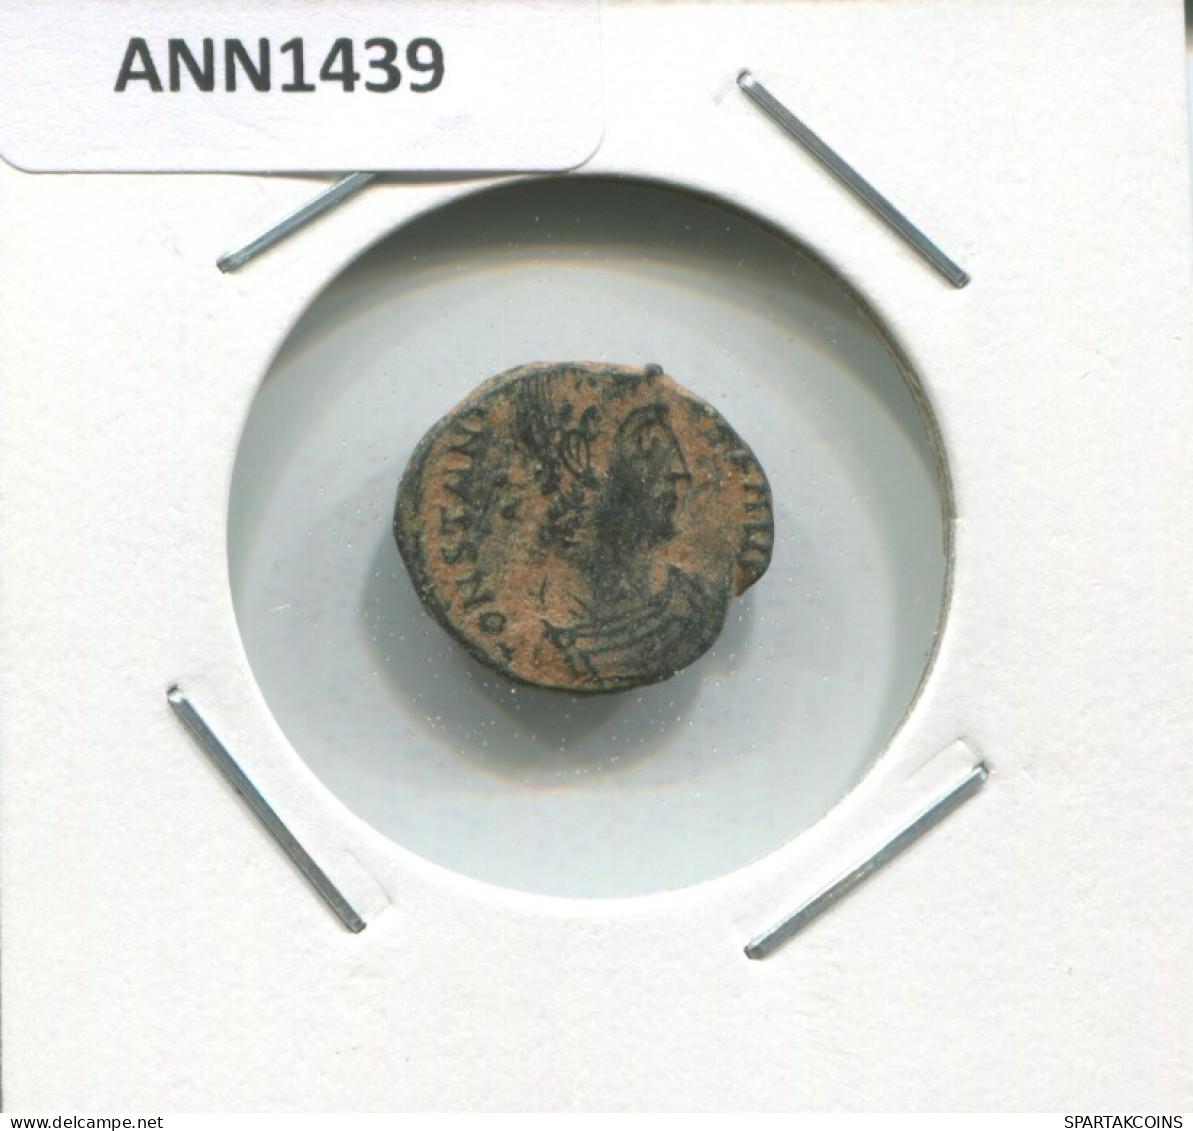 CONSTANTIUS II THESSALONICA SMTSE VICTORIAE DDAVGGQNN 1.6g/16m #ANN1439.10.F.A - El Imperio Christiano (307 / 363)